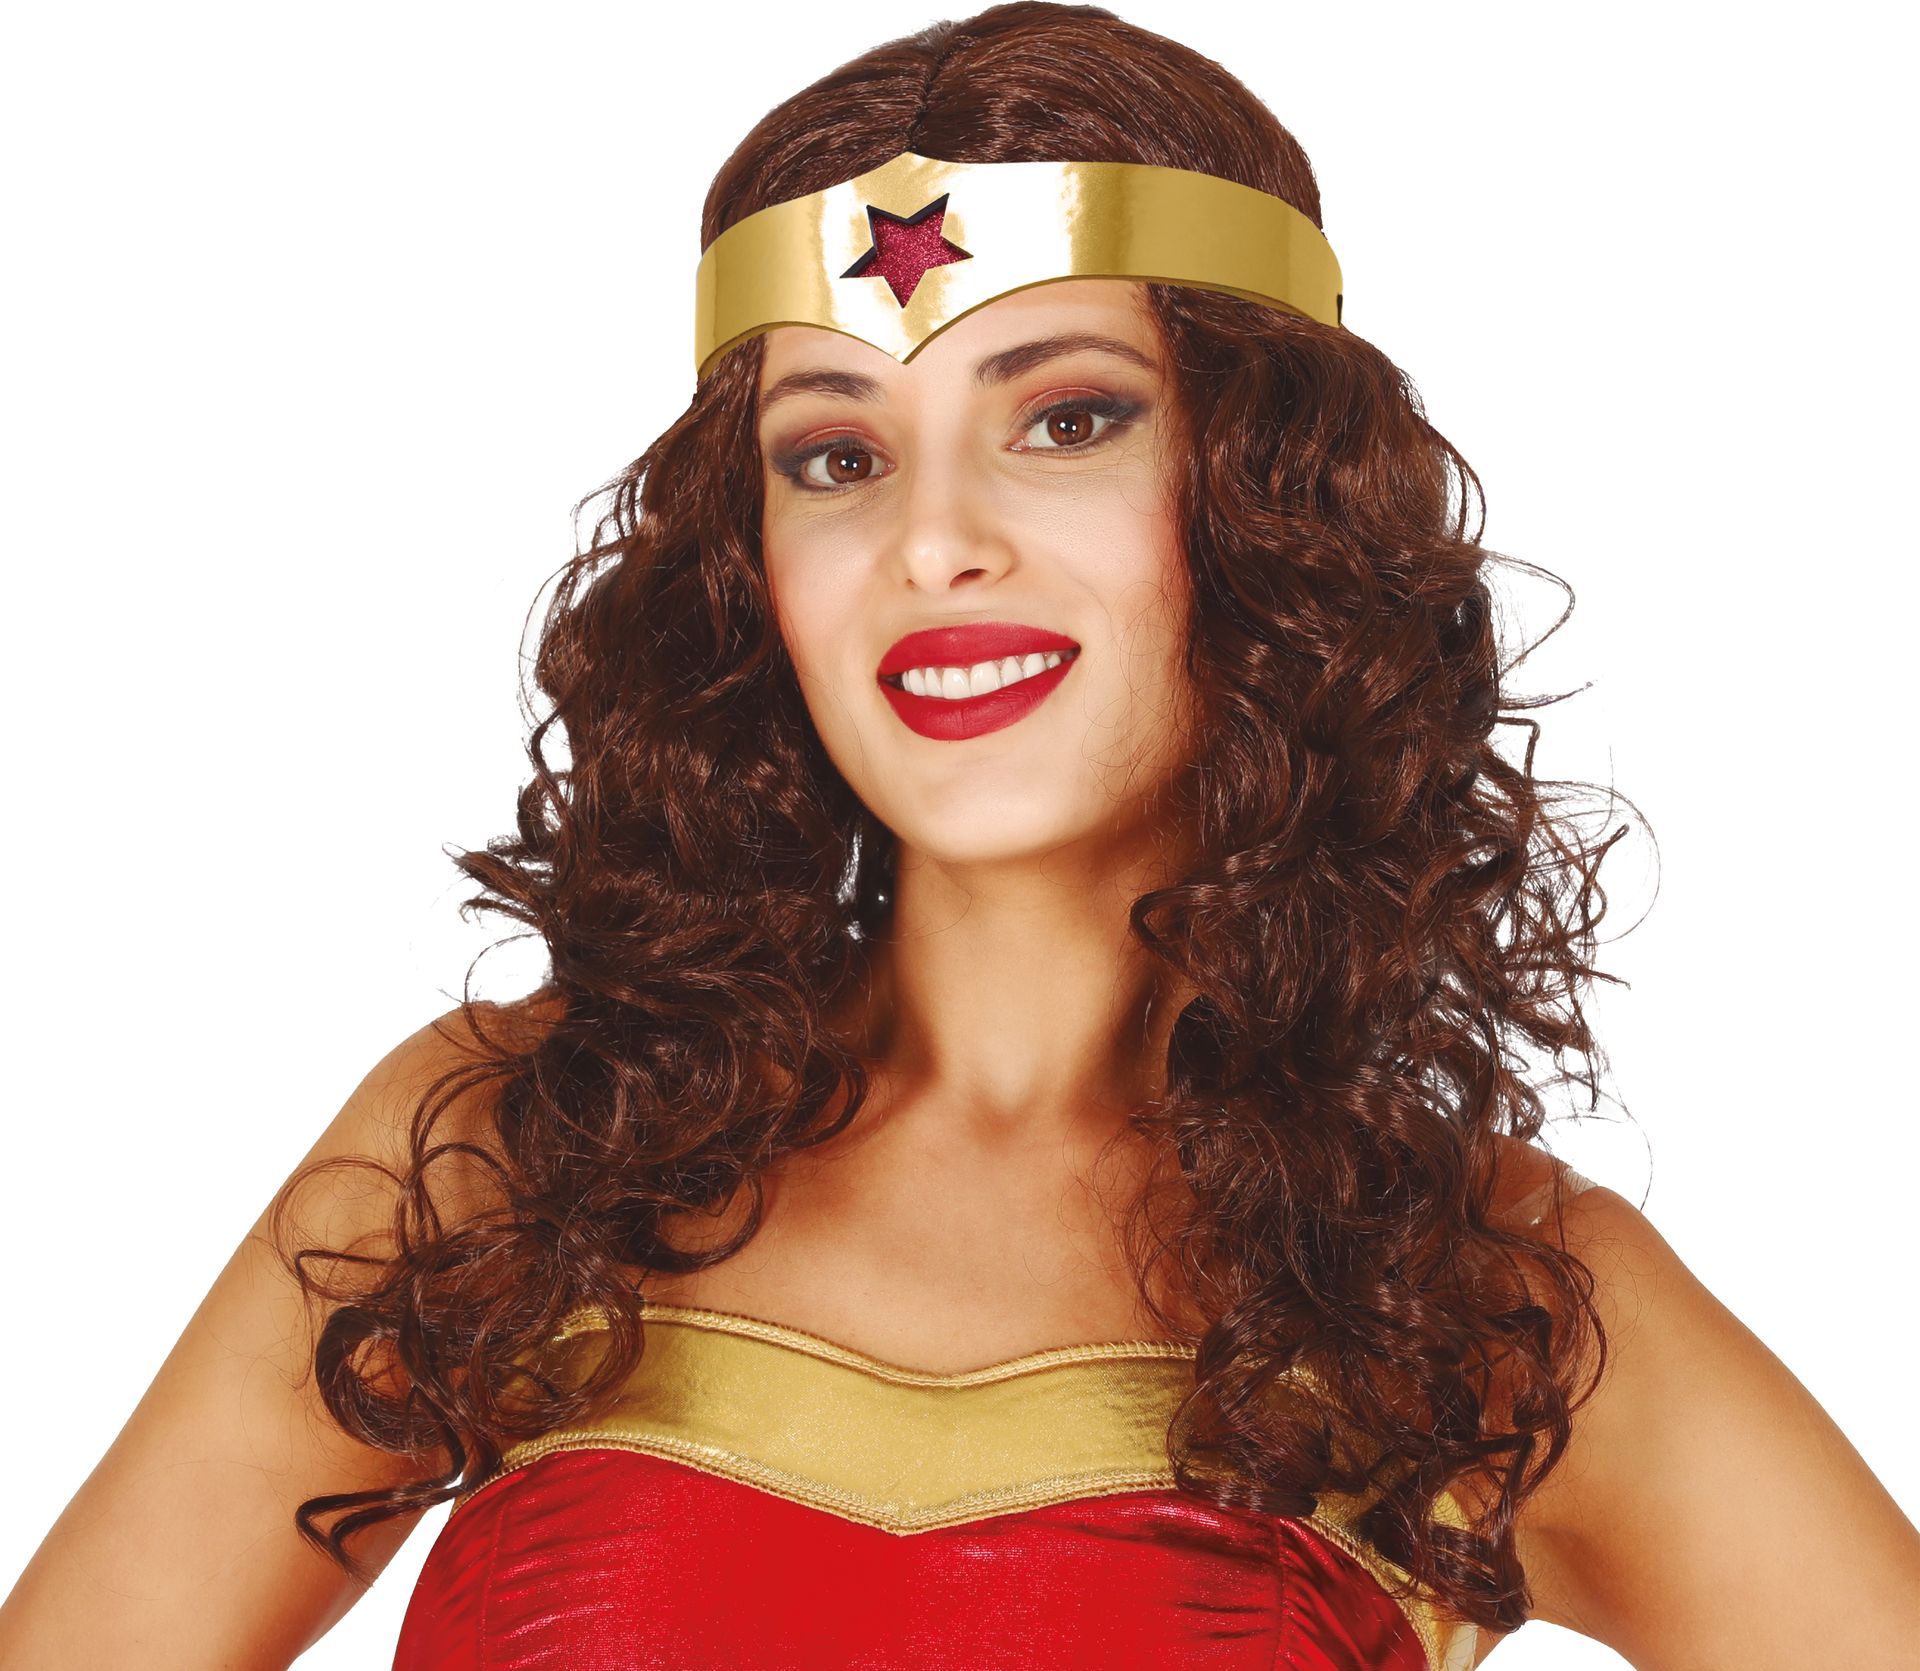 Pruik Superwoman met hoofdband